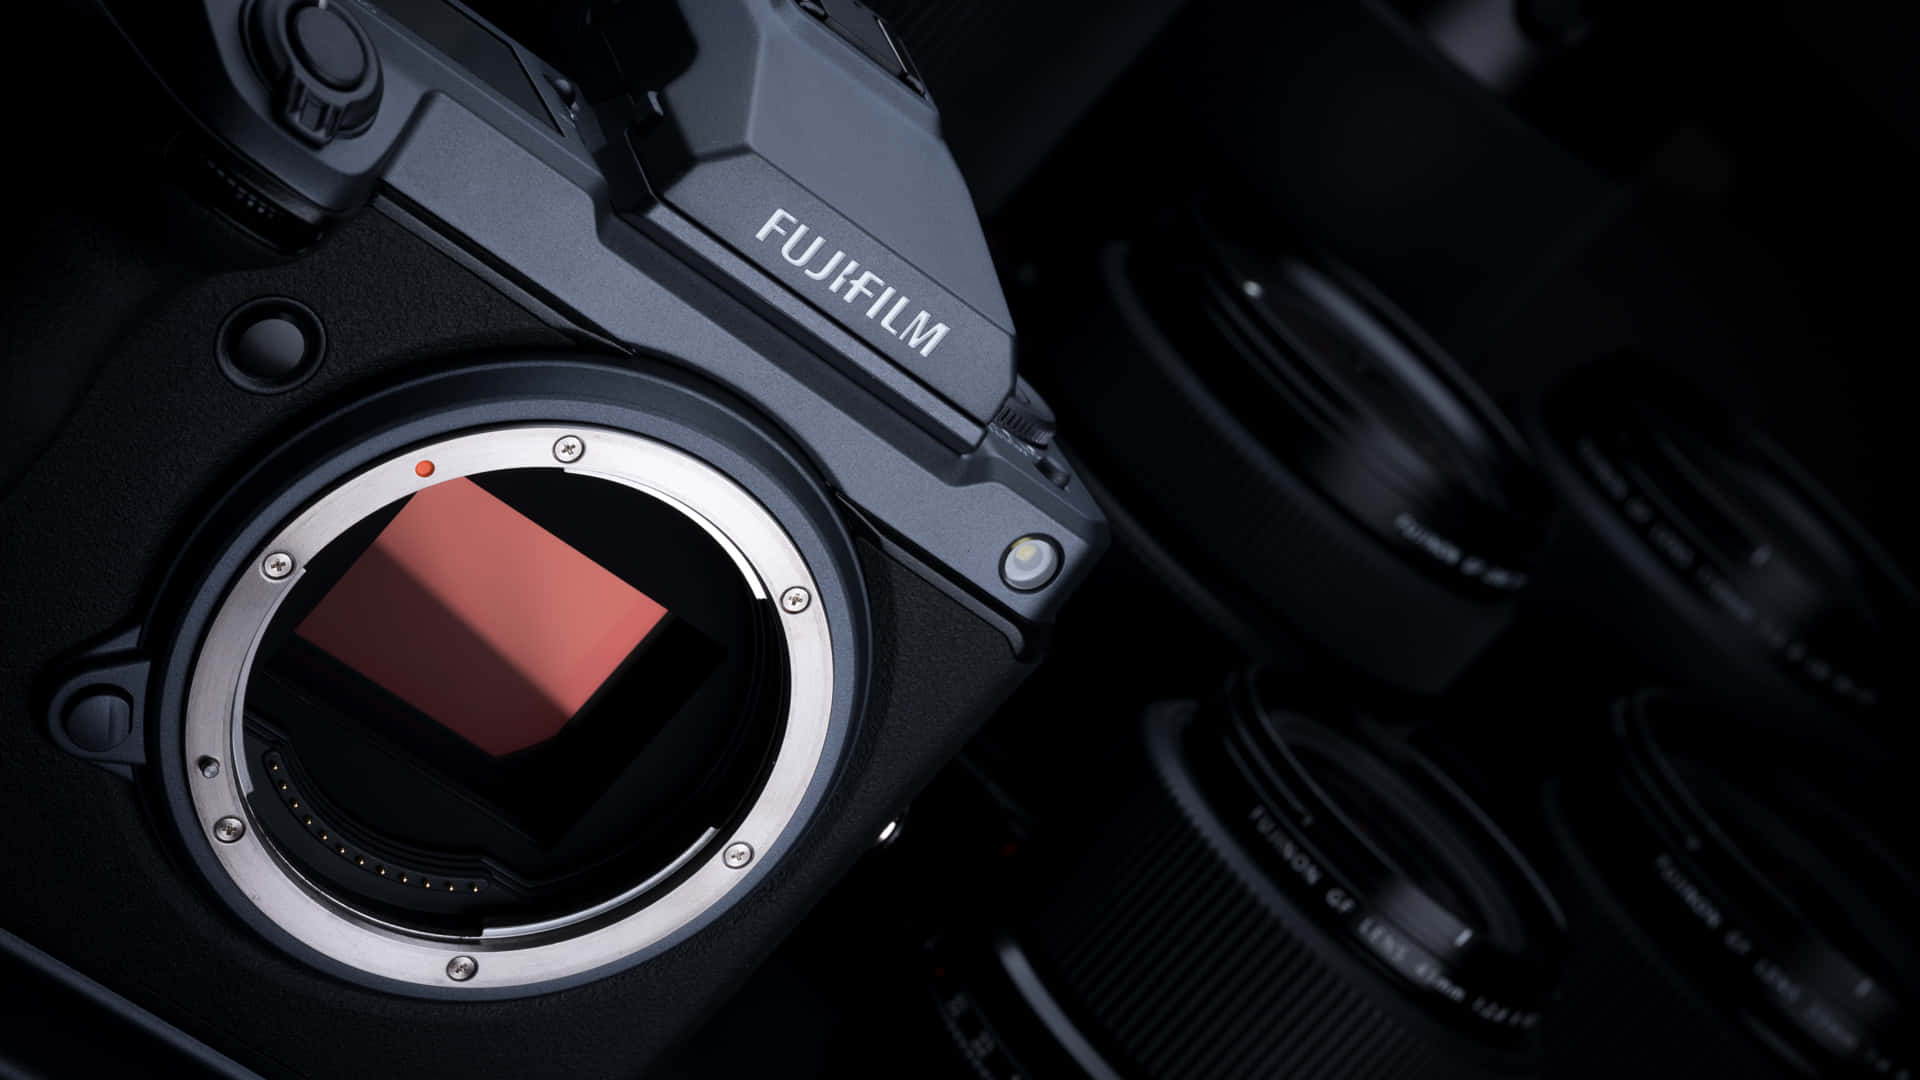 Fujifilmkamera Och Objektiv Gfx Bakgrundsbild.